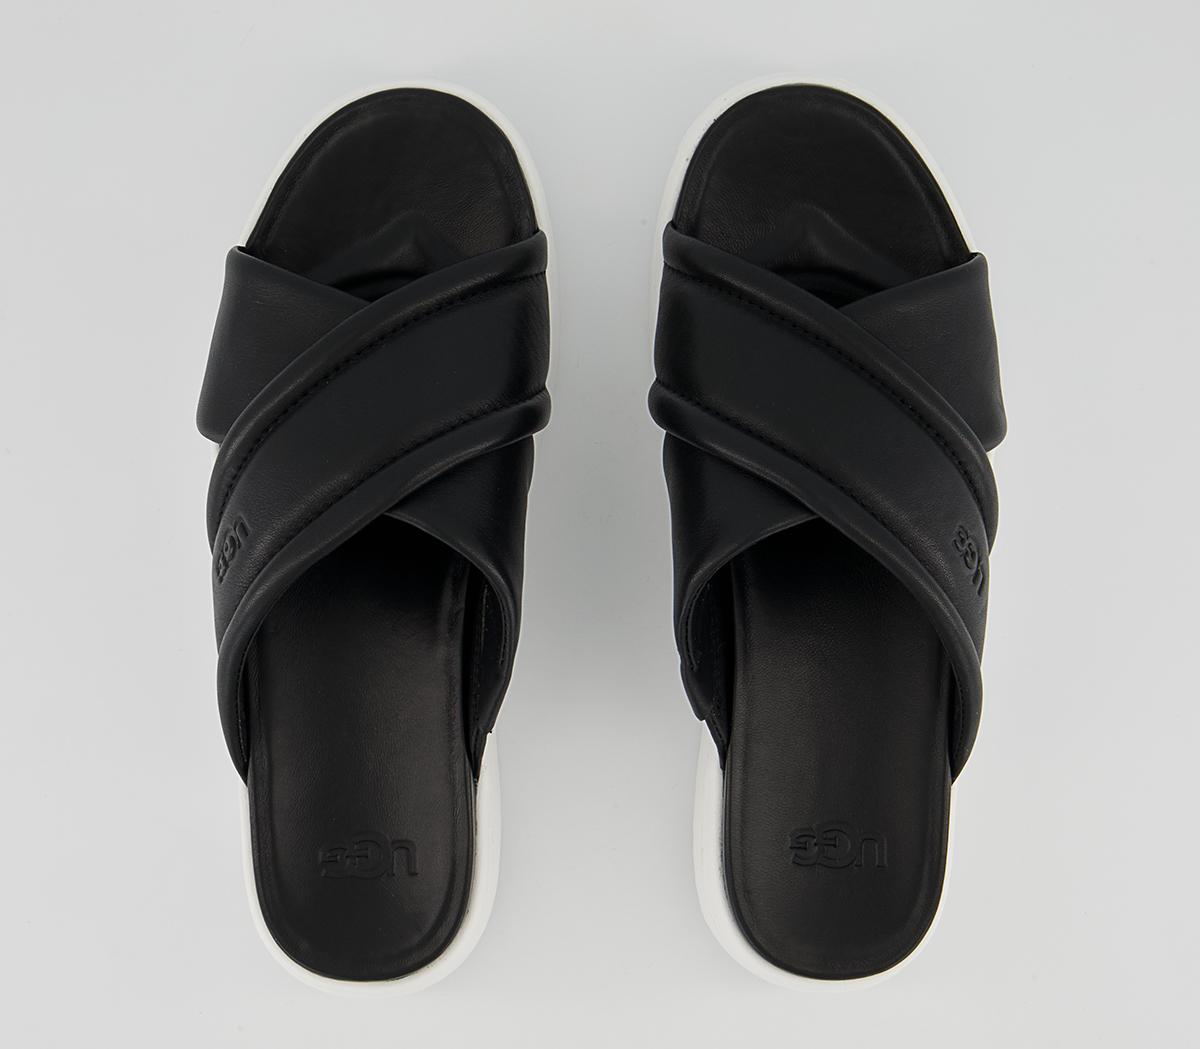 UGG Zayne Crossband Slides Black Leather - Women’s Sandals